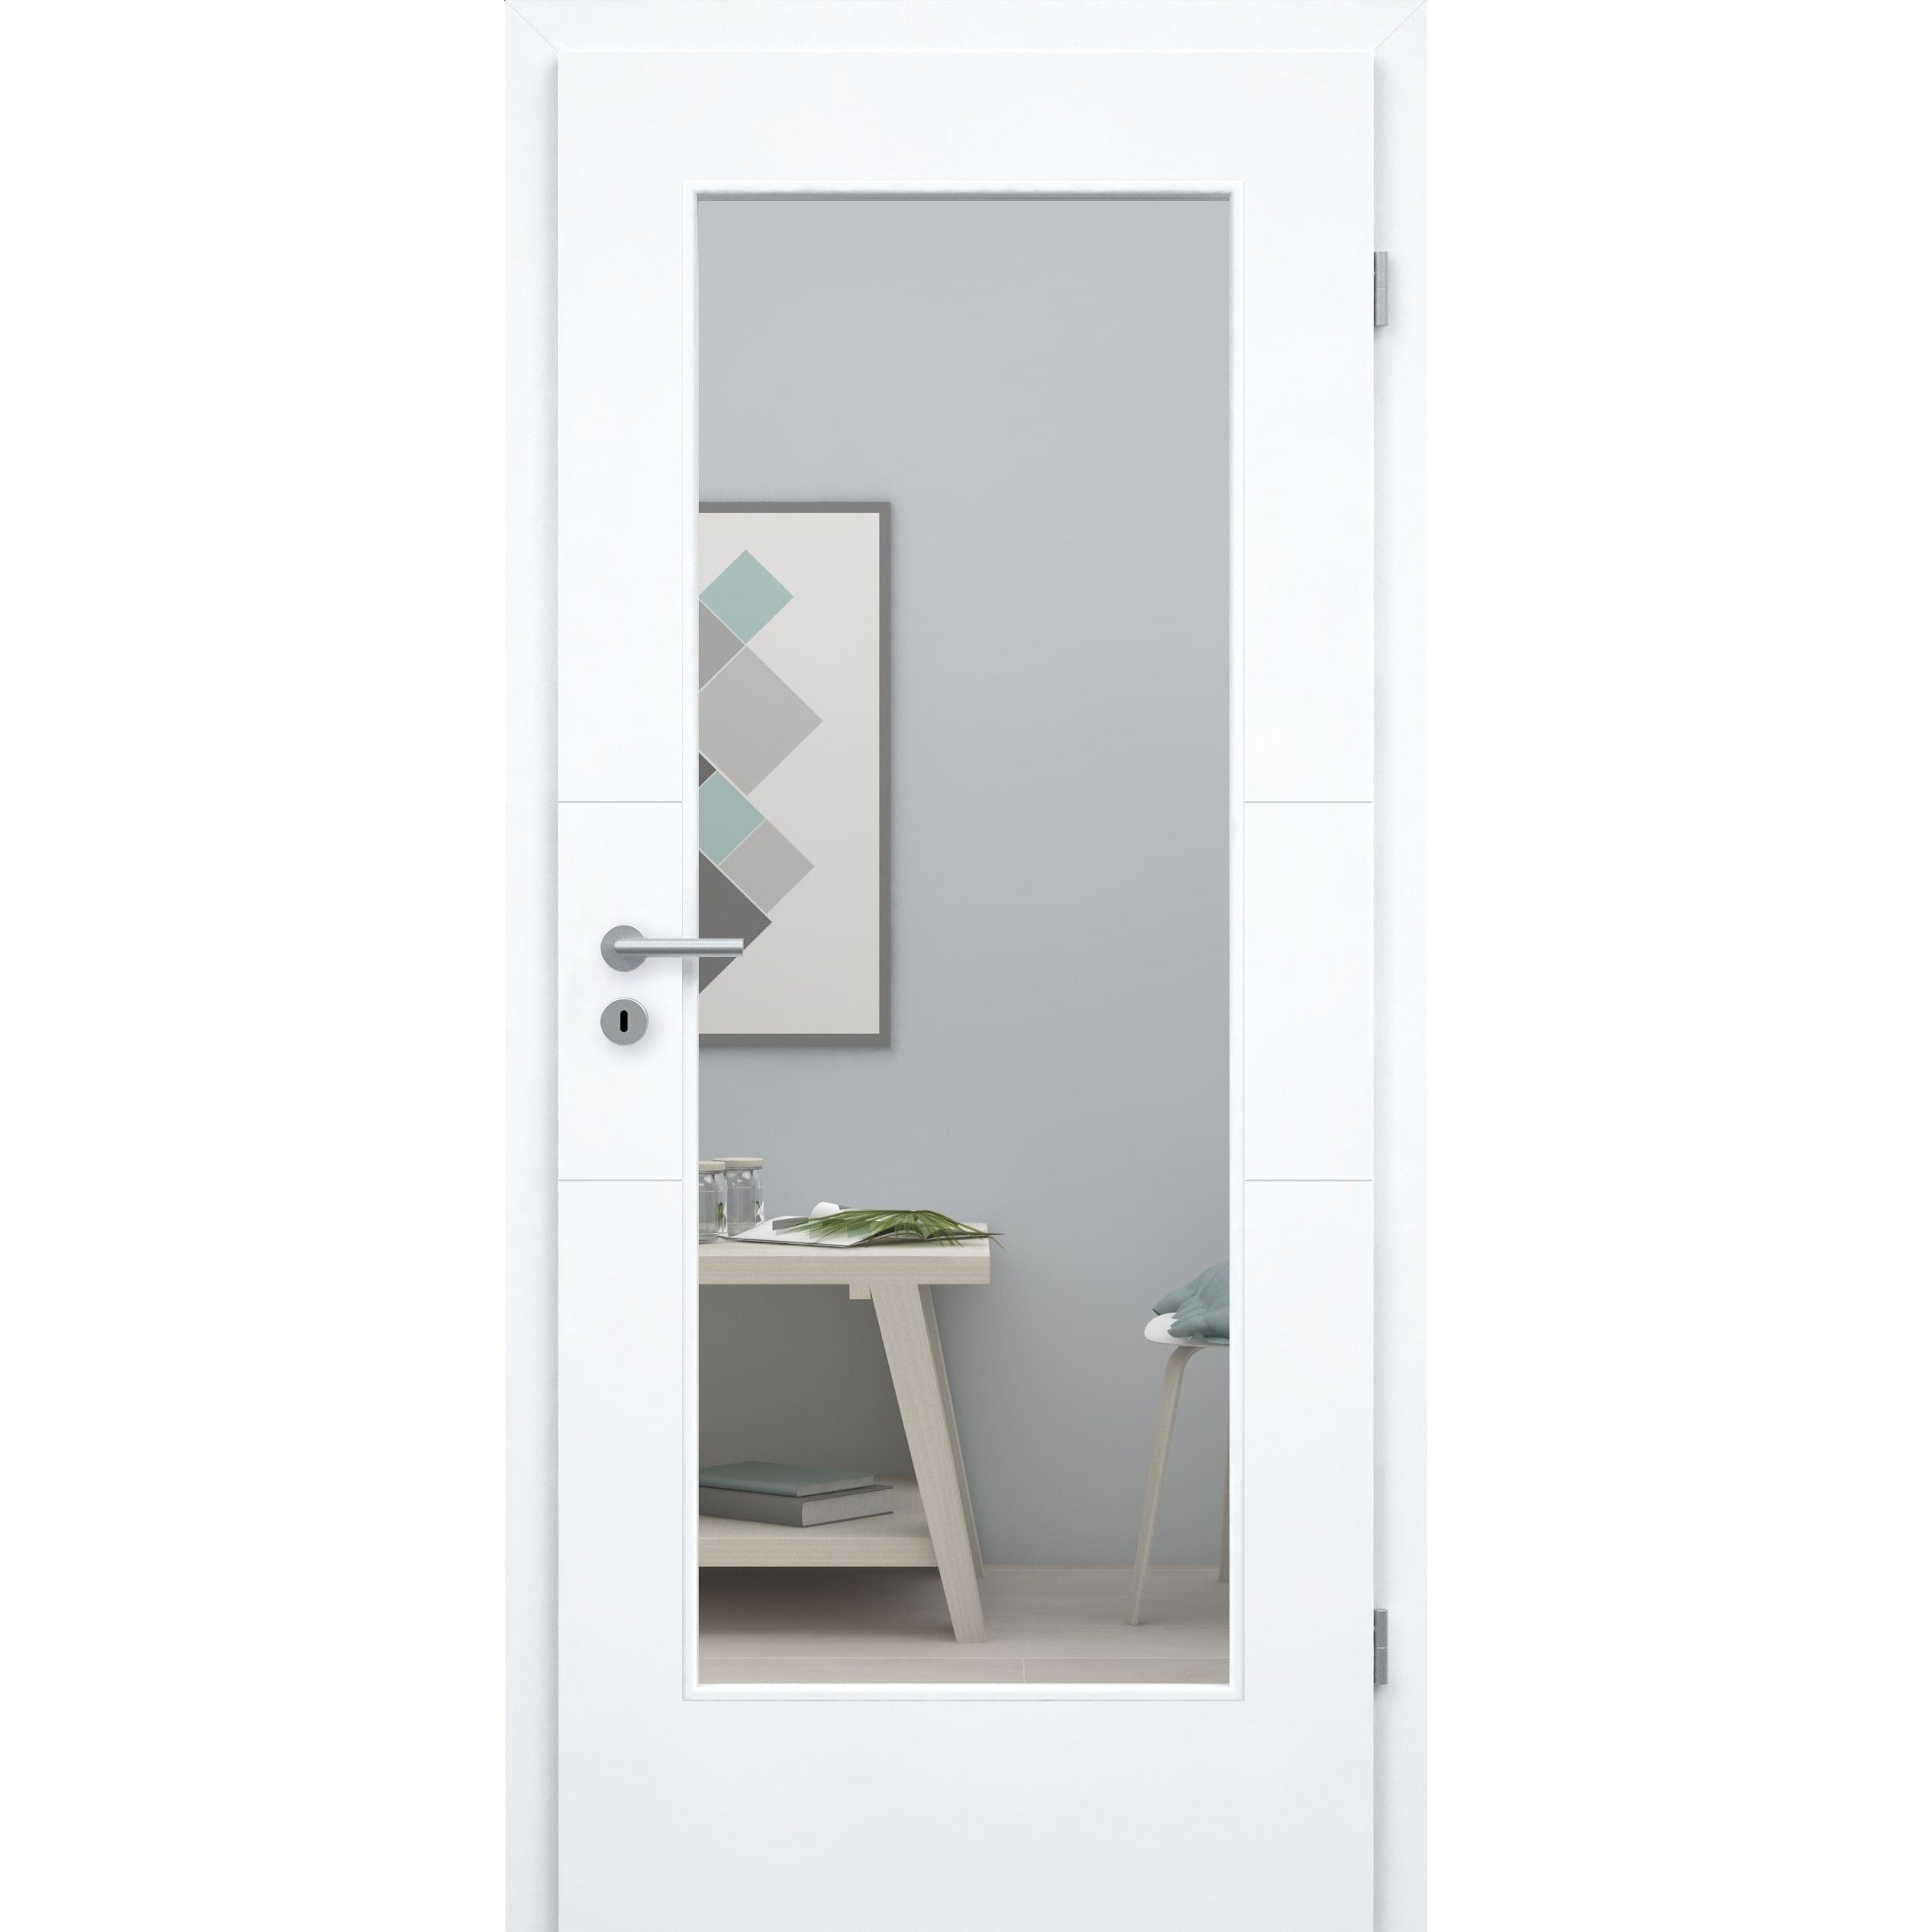 Zimmertür mit Lichtausschnitt brillant-weiß 2 Rillen quer Designkante - Modell Designtür Q23LA